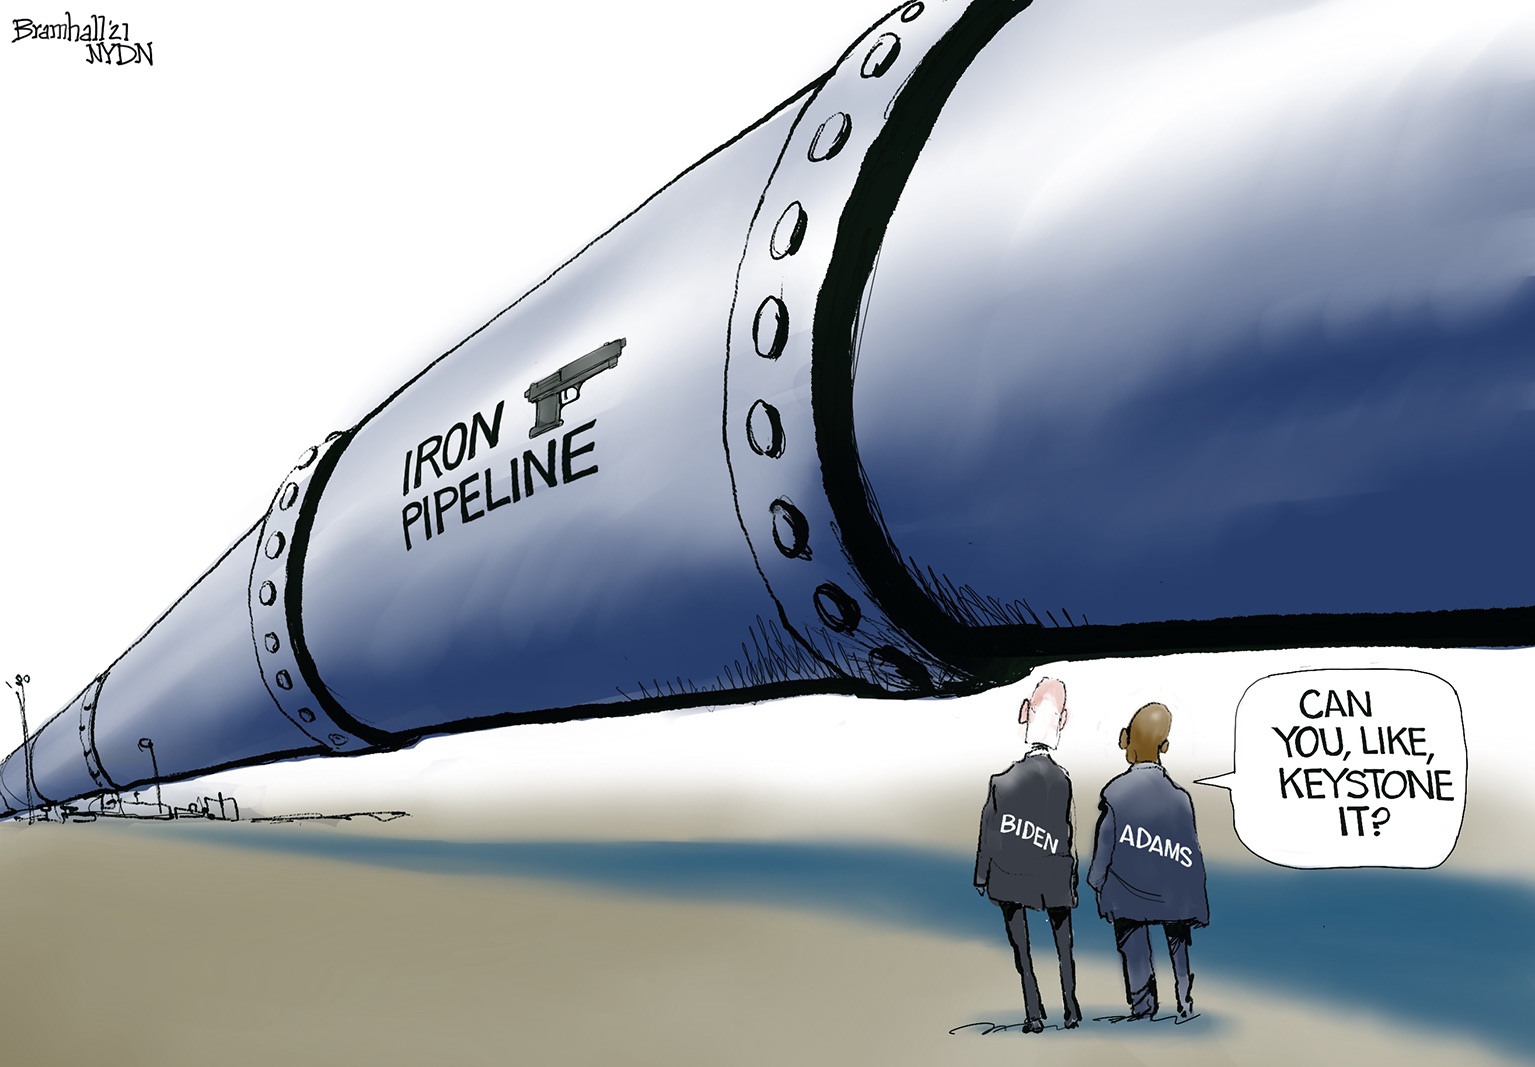 iron pipeline